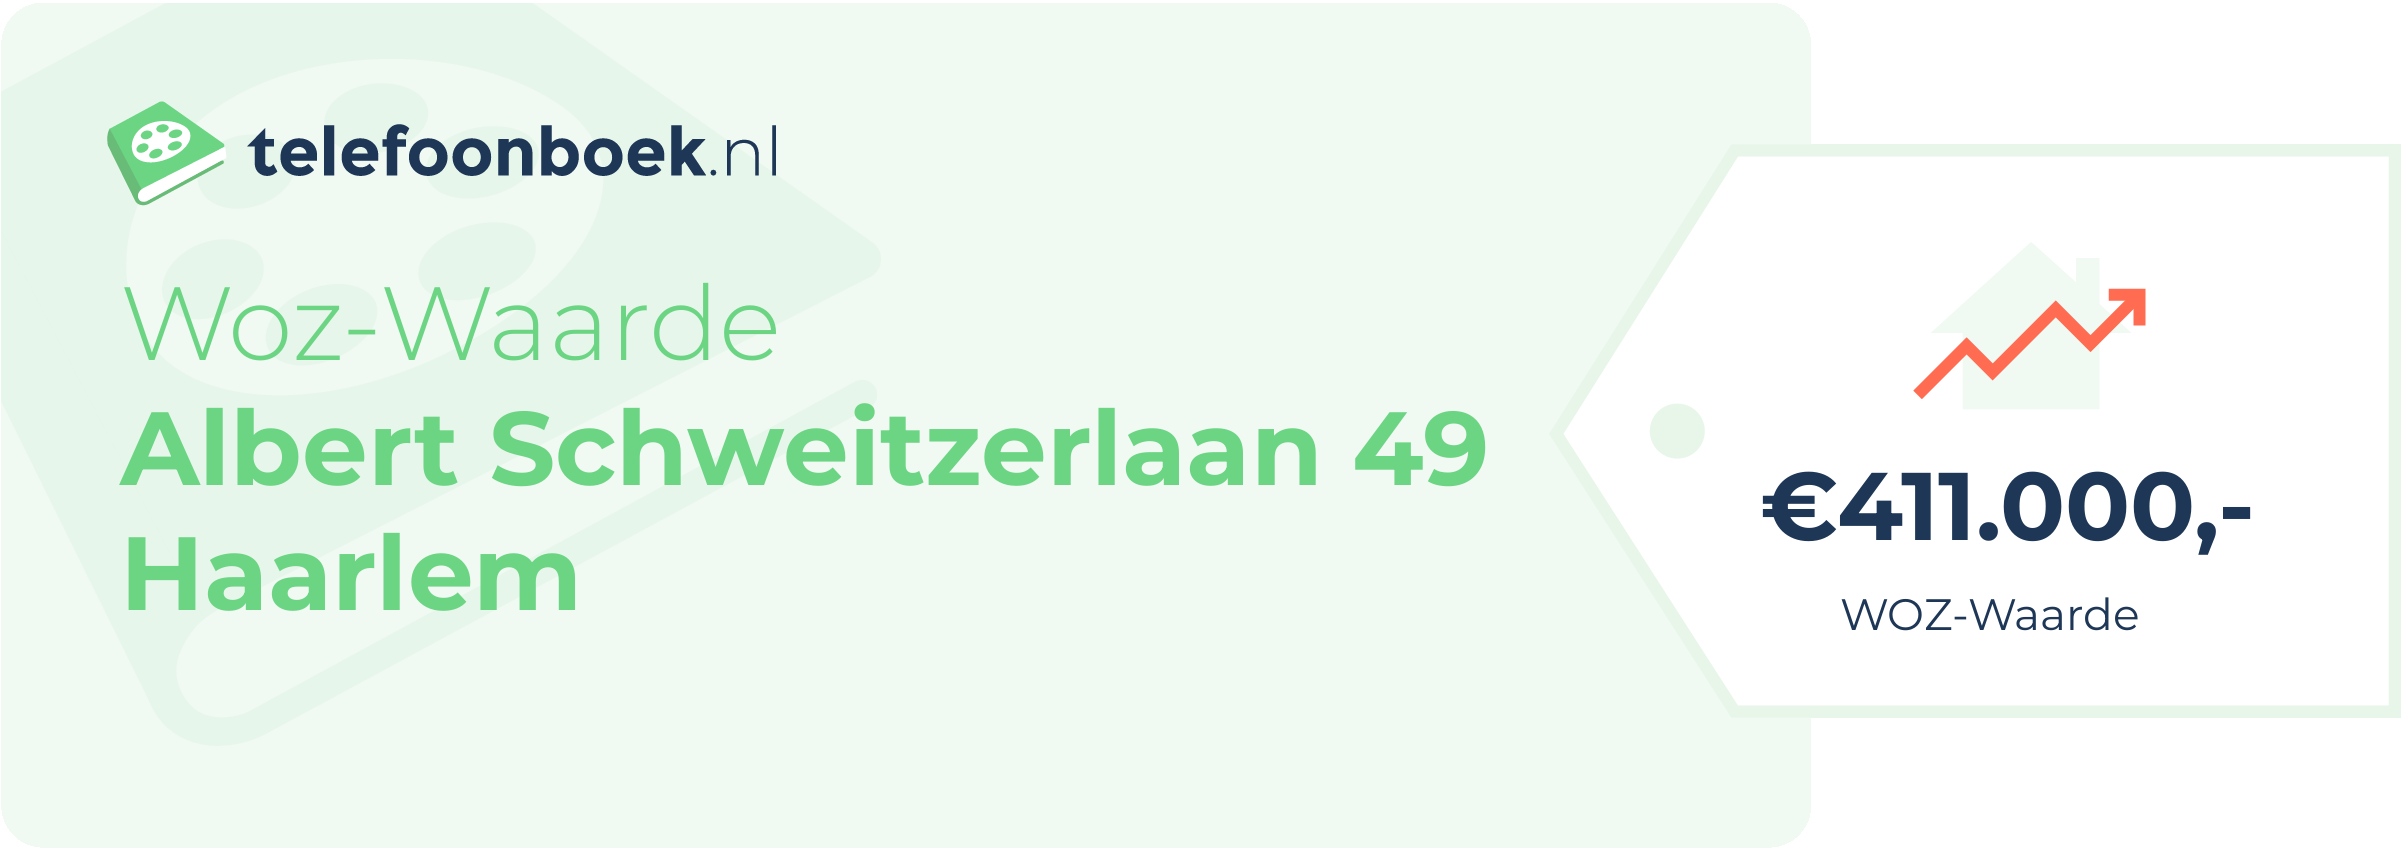 WOZ-waarde Albert Schweitzerlaan 49 Haarlem